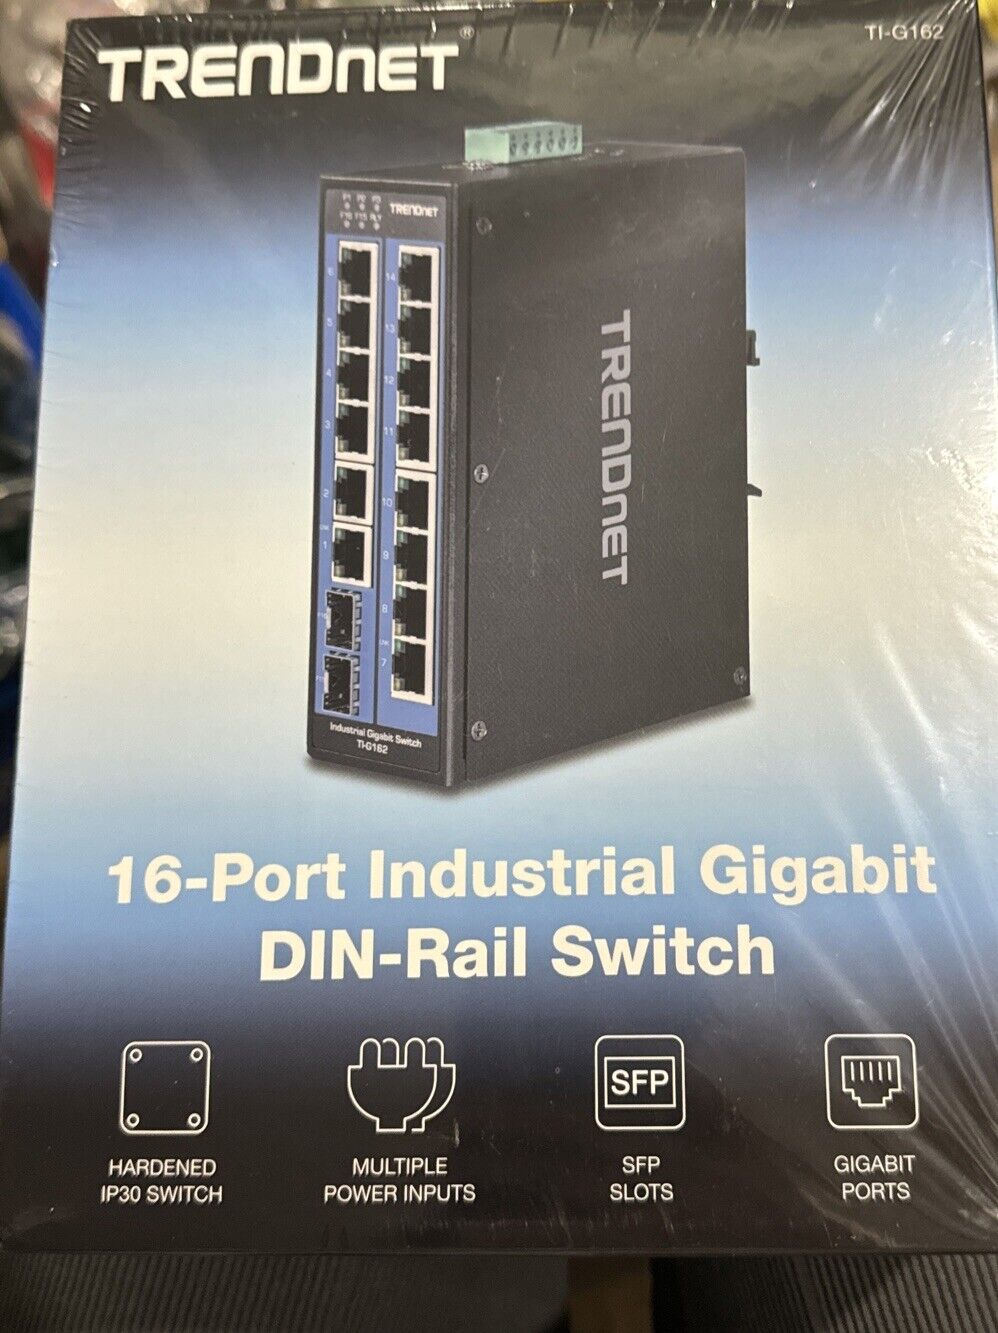 TRENDnet TI-G162 16-Port Hardened Industrial Gigabit DIN-Rail Switch